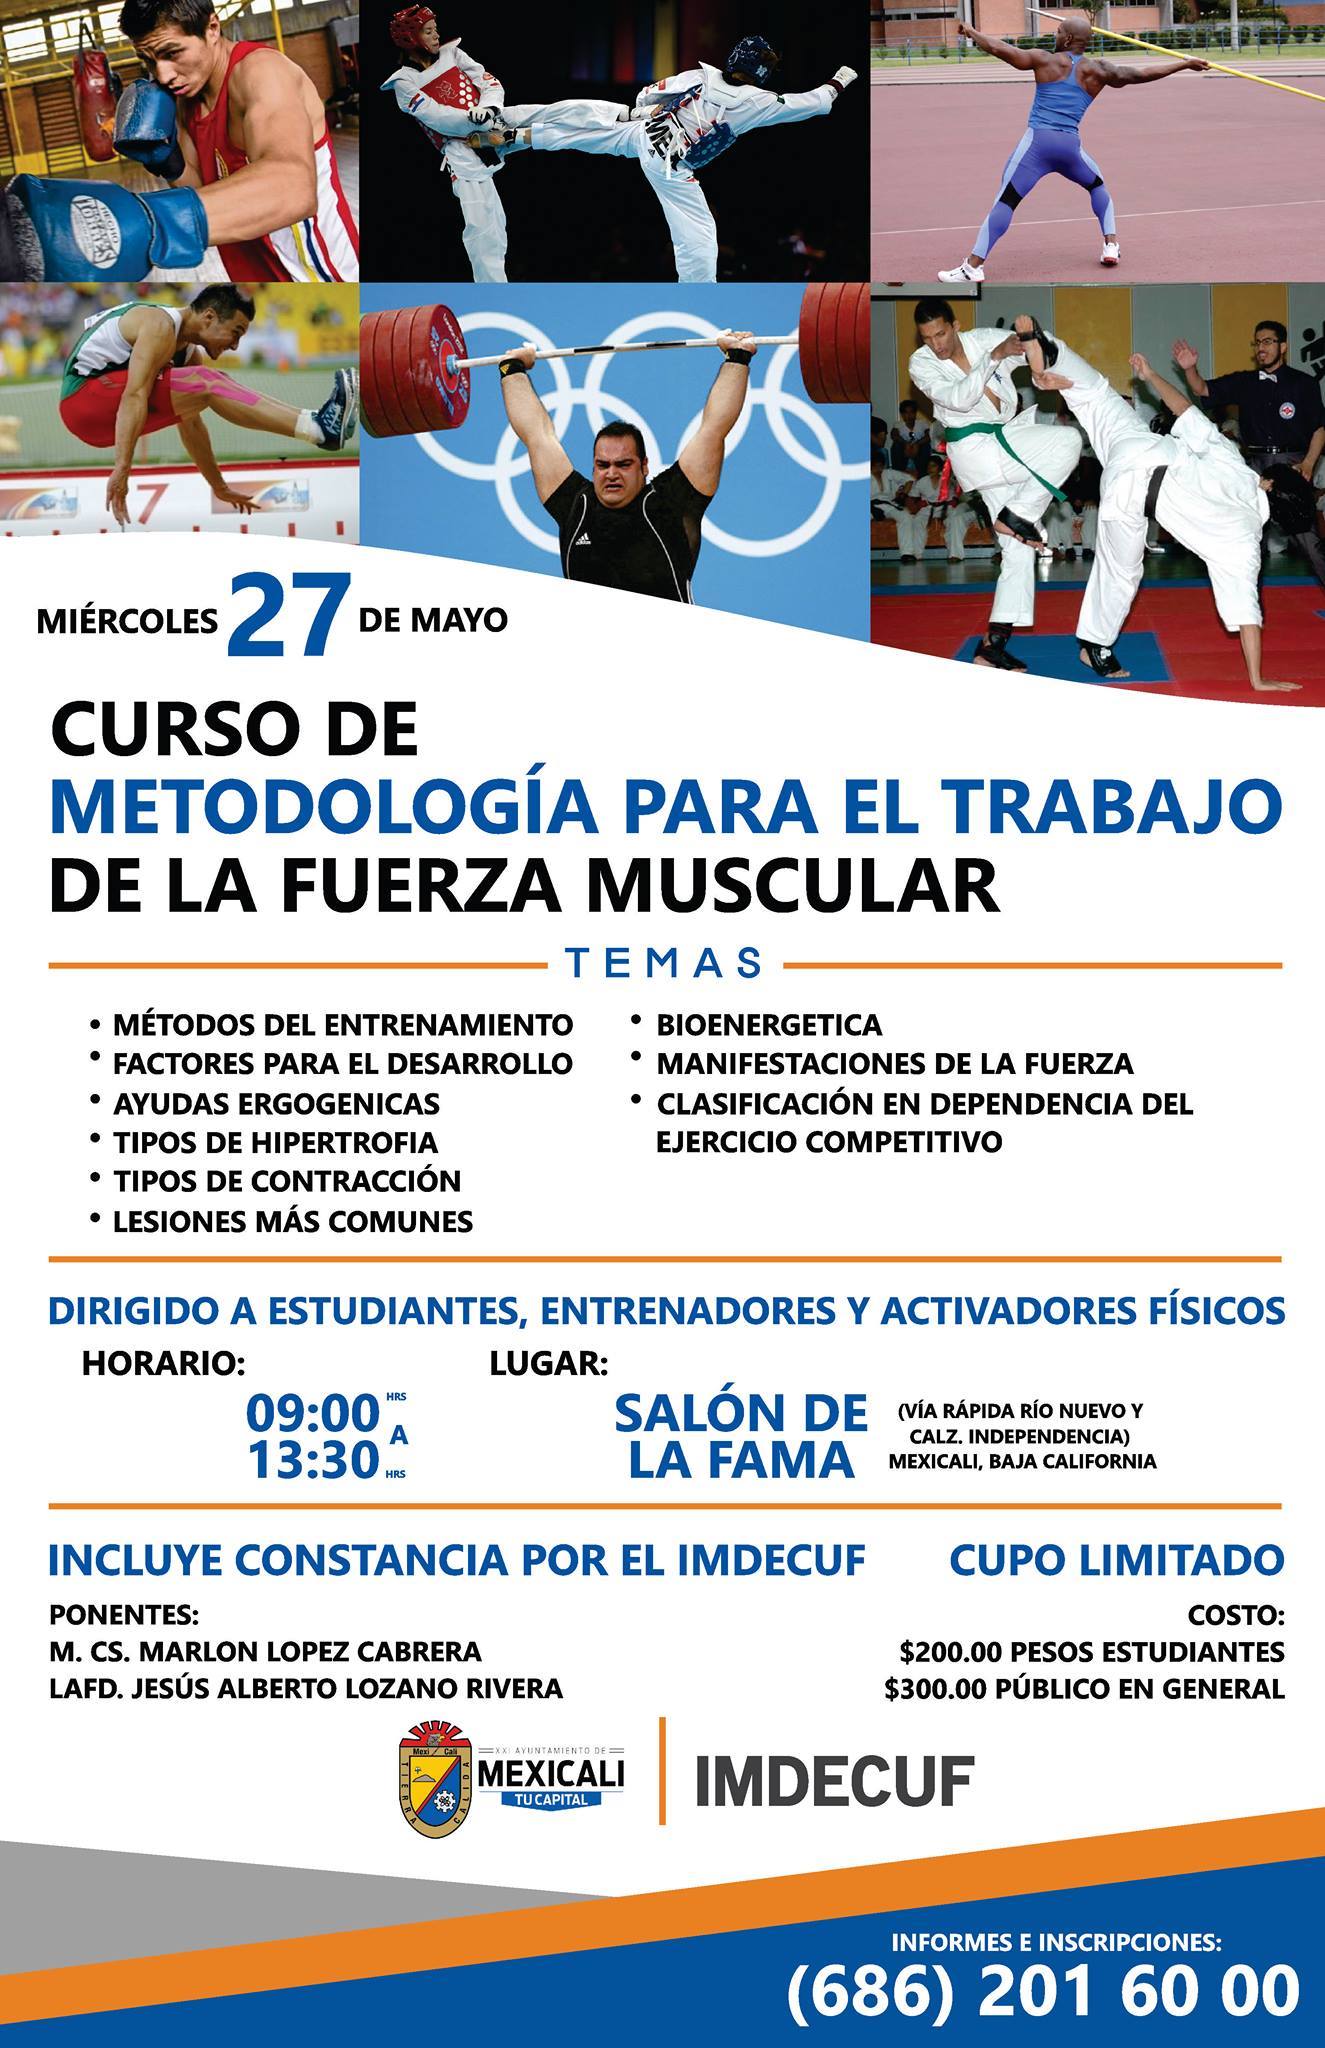 Curso de Metodología para el Trabajo de la Fuerza Muscular. (27/05/2015)